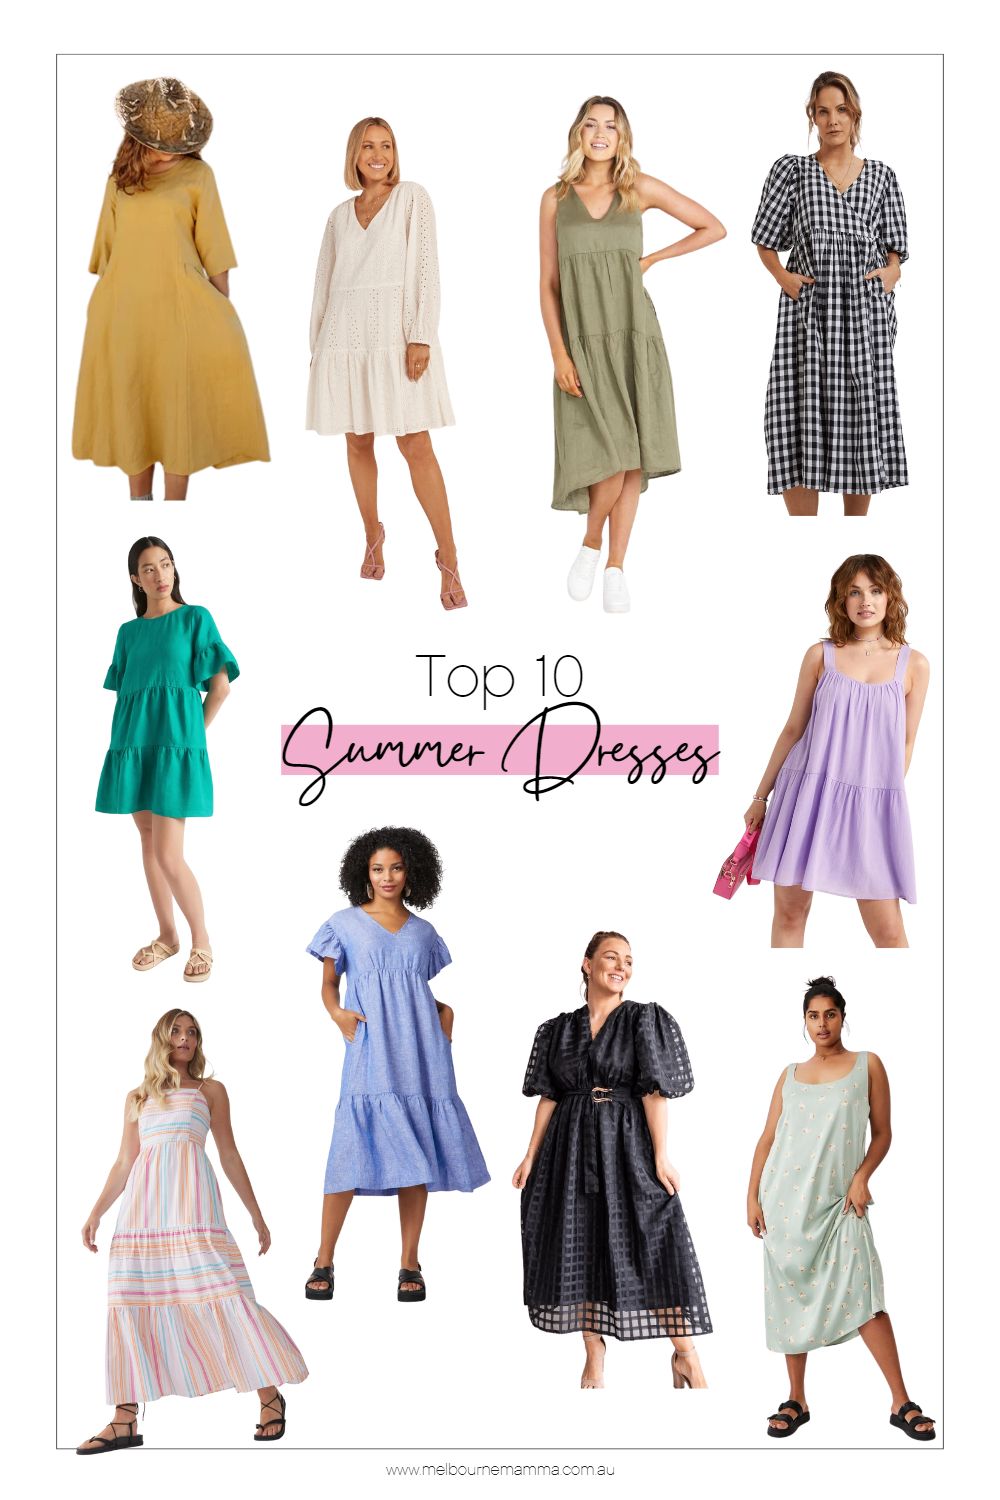 Top 10 Summer Dresses